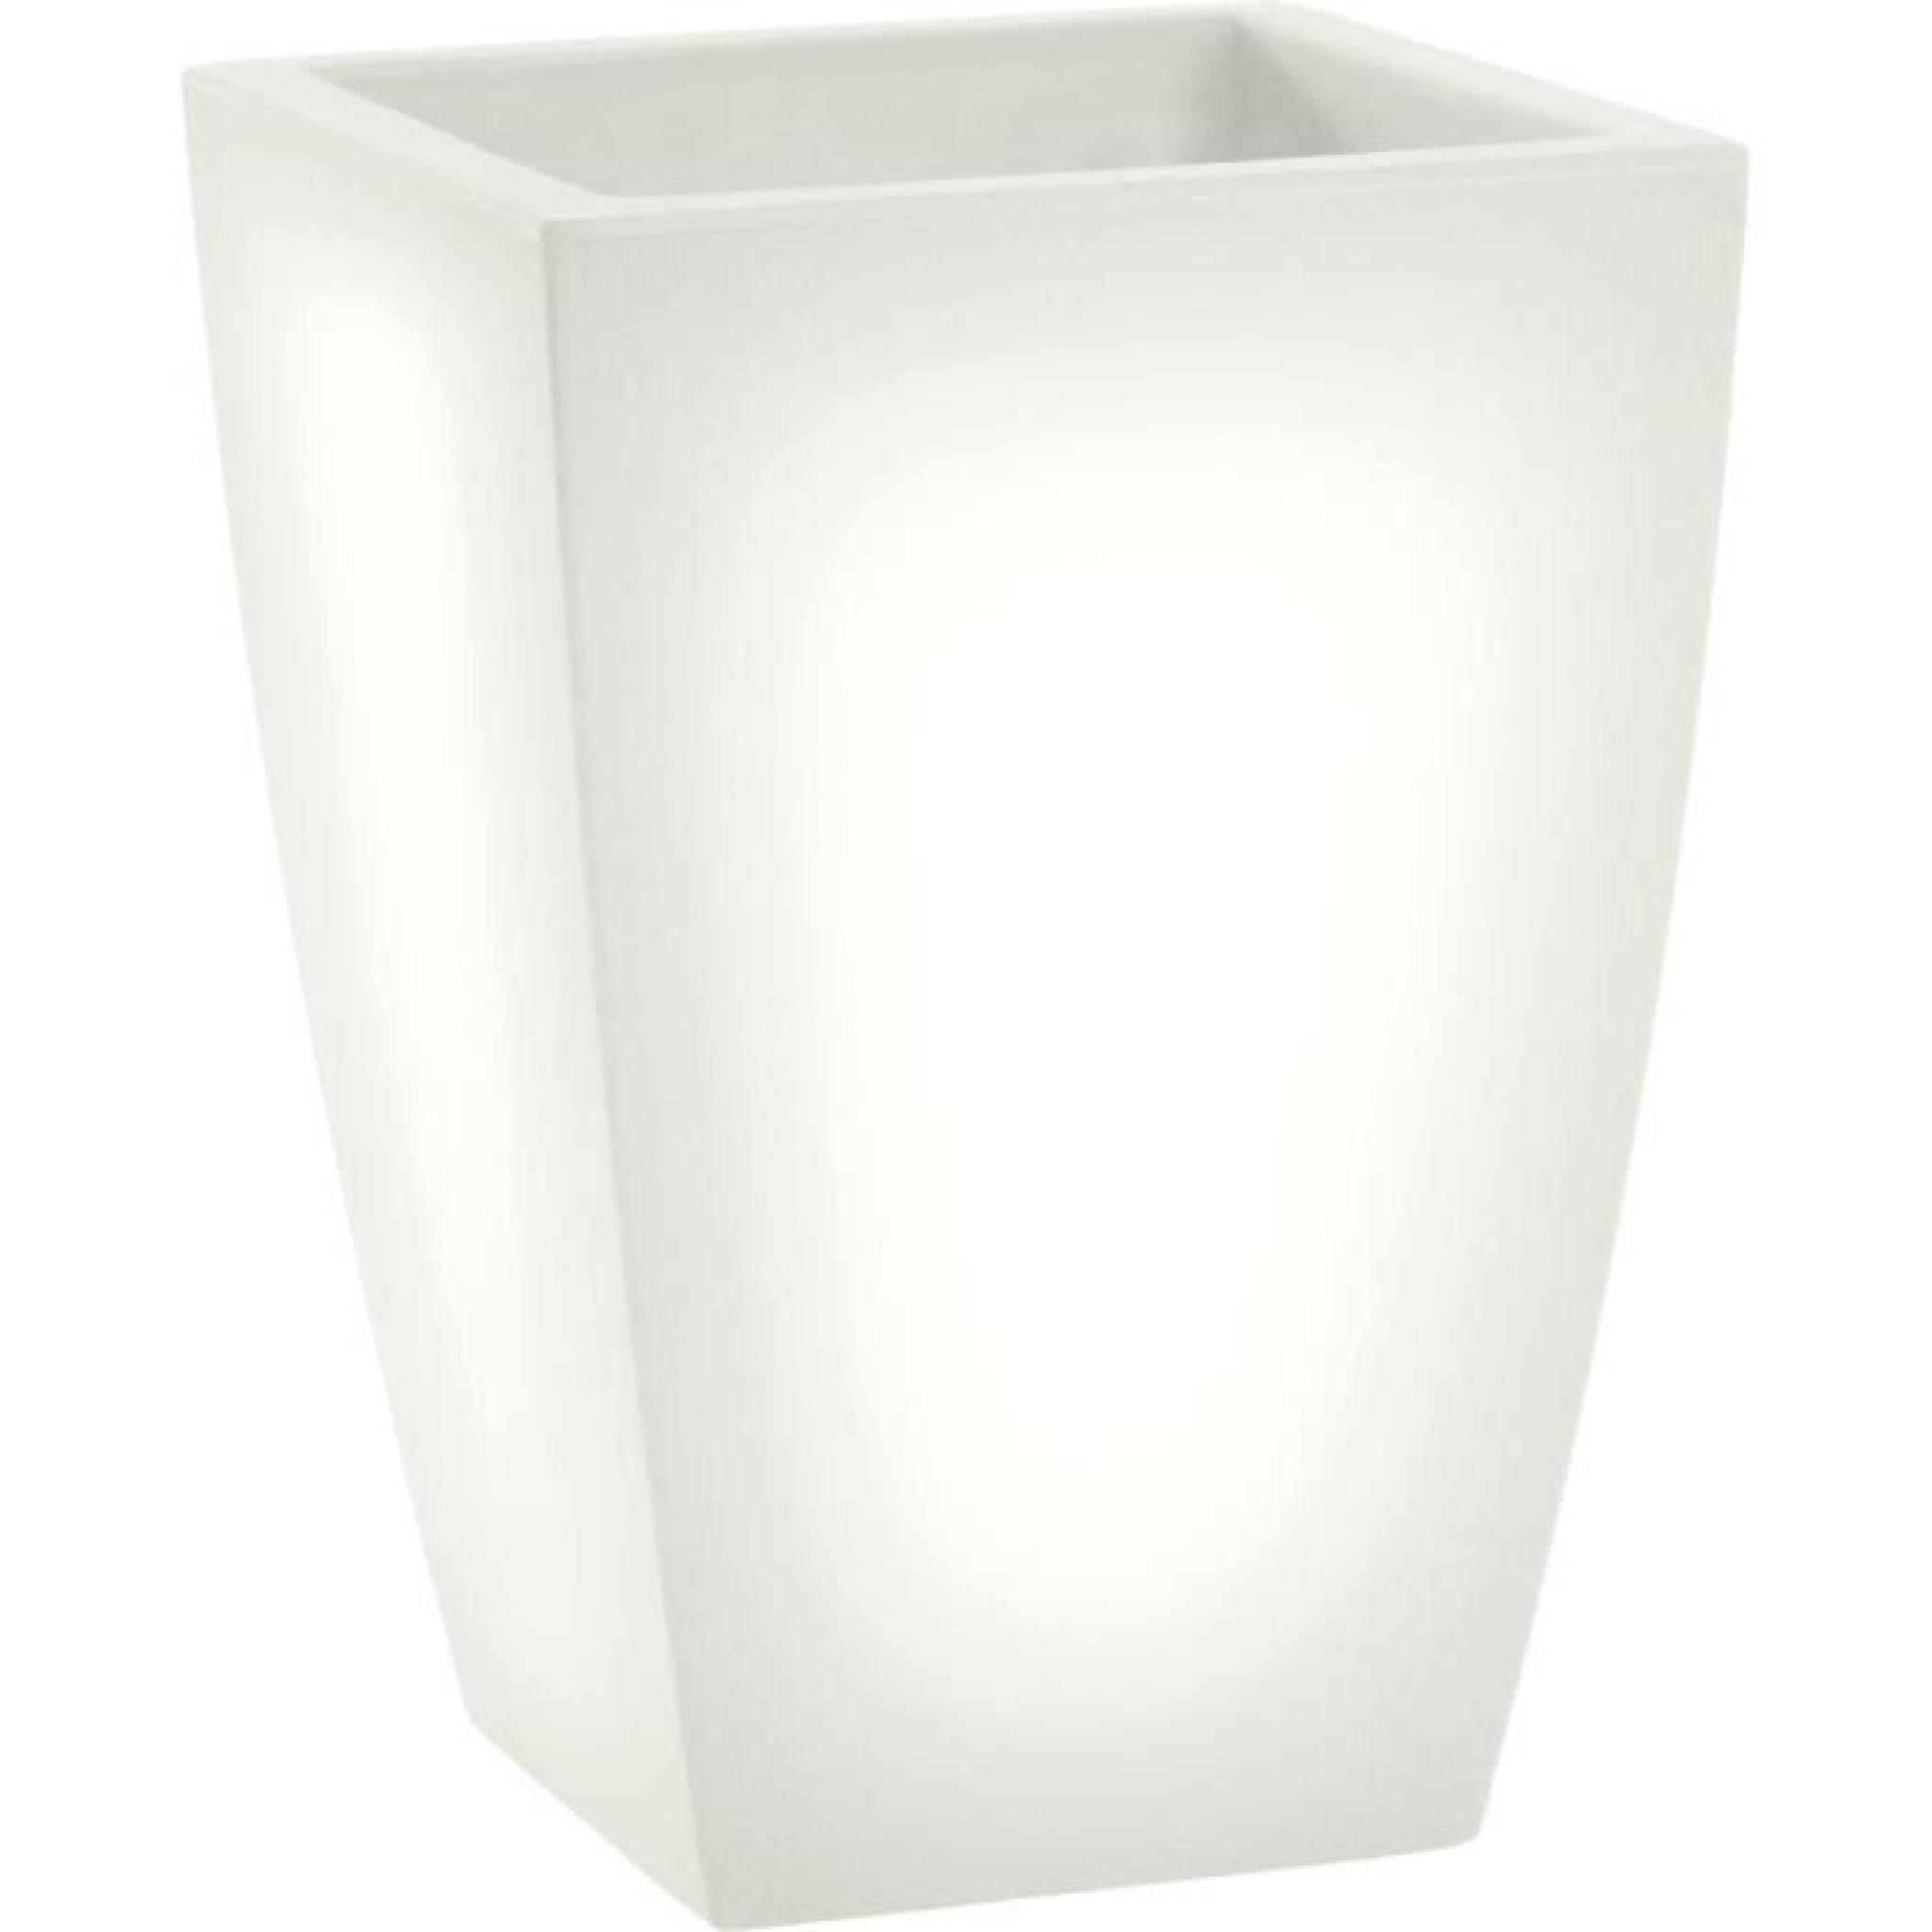 LED pot de fleurs lumineux, lumière blanc chaud, l38 x h80 x l38 cm, fait de haute qualité polyéthylène